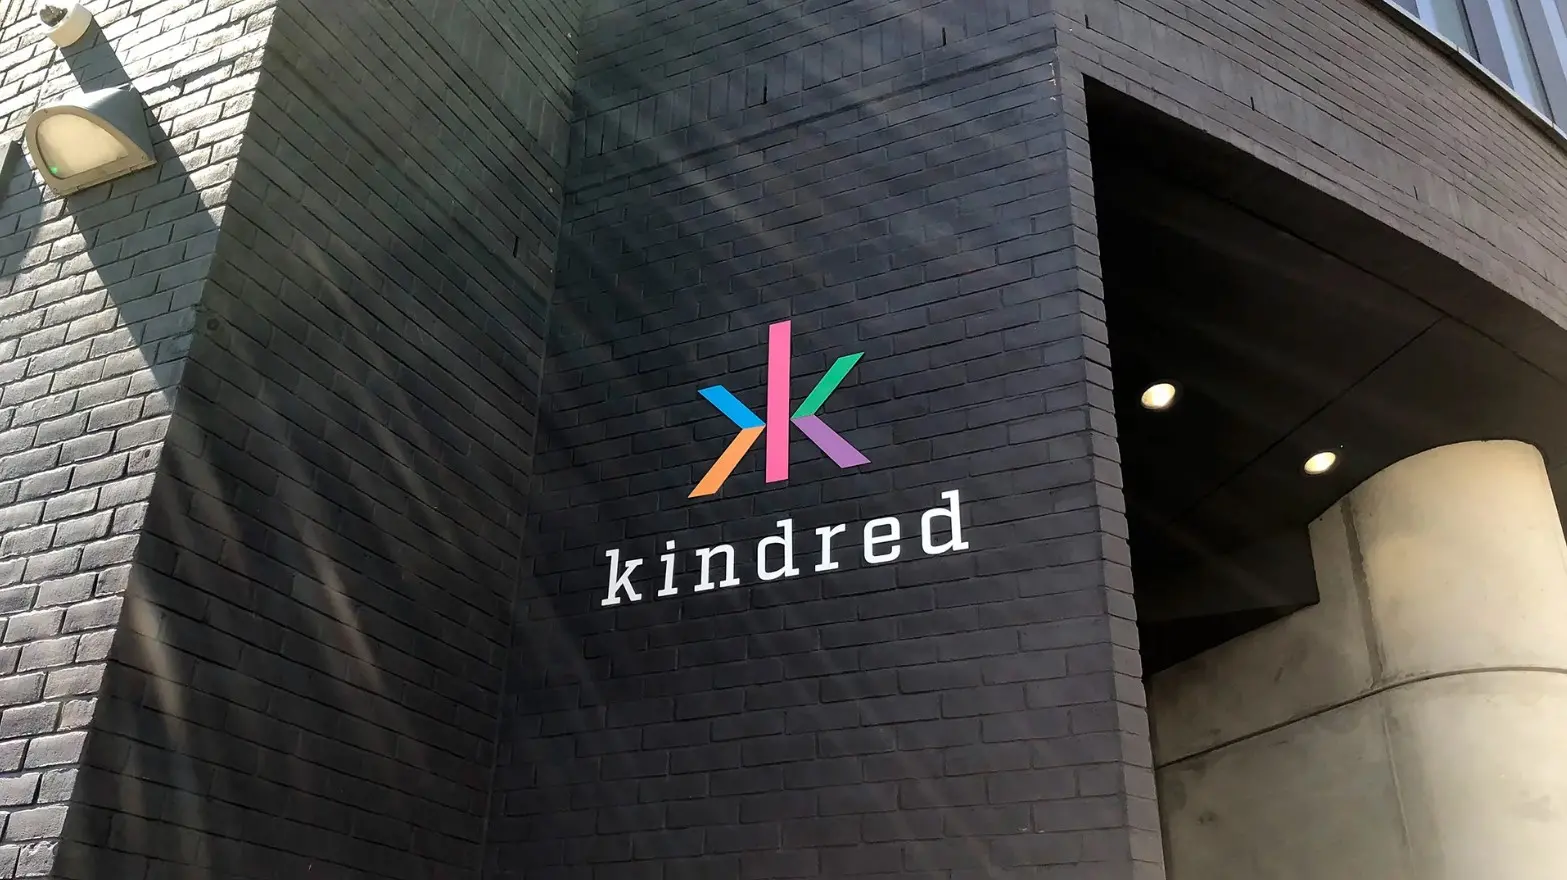 A Kindred Group együttműködik svéd szolgáltatókkal a szerencsejátékokkal kapcsolatos problémák